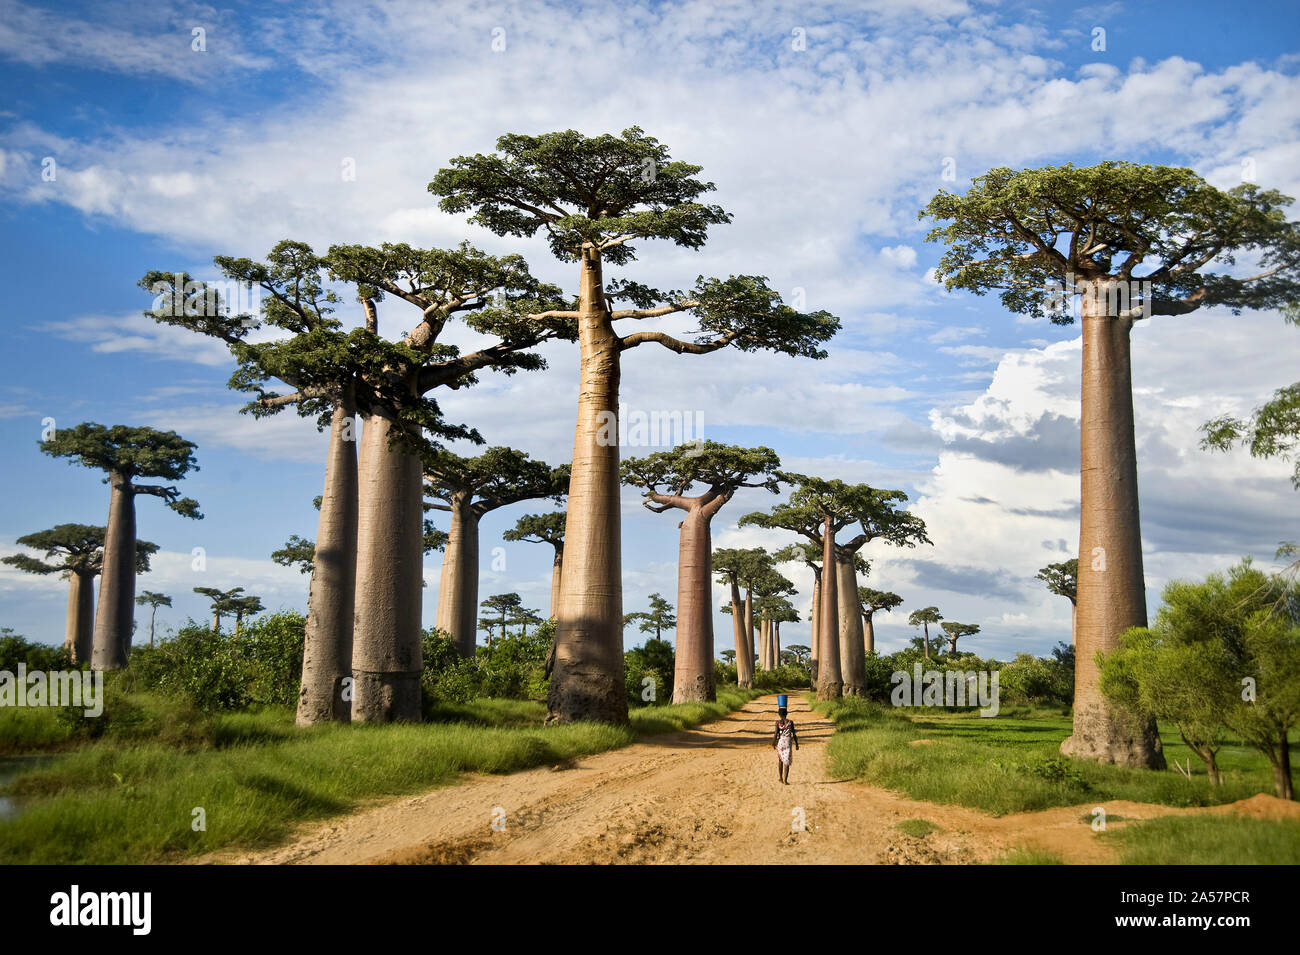 Les baobabs (Adansonia digitata) le long d'un chemin de terre, l'Avenue des baobabs, Morondava, Madagascar Banque D'Images